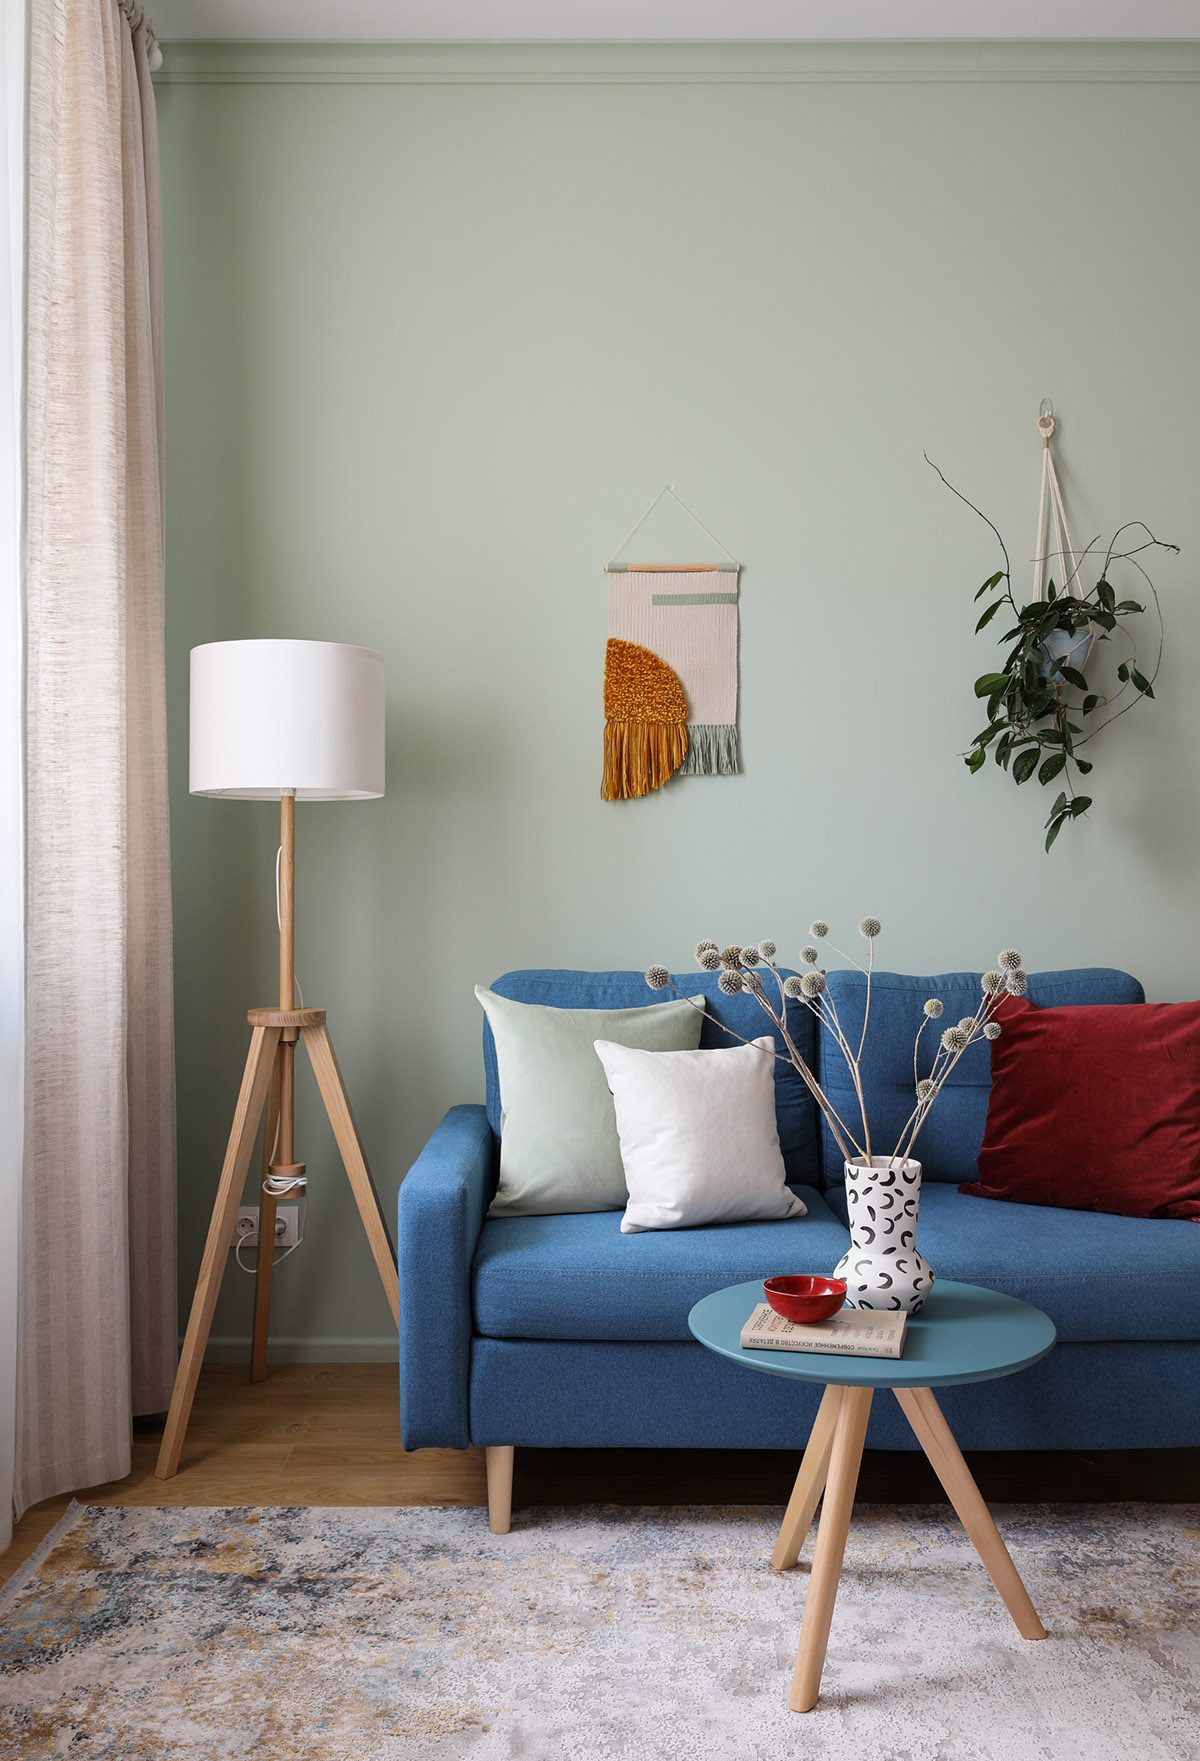 Góc phòng khách với sofa xanh, đèn sàn màu trắng, rèm cửa, chậu cây treo tường